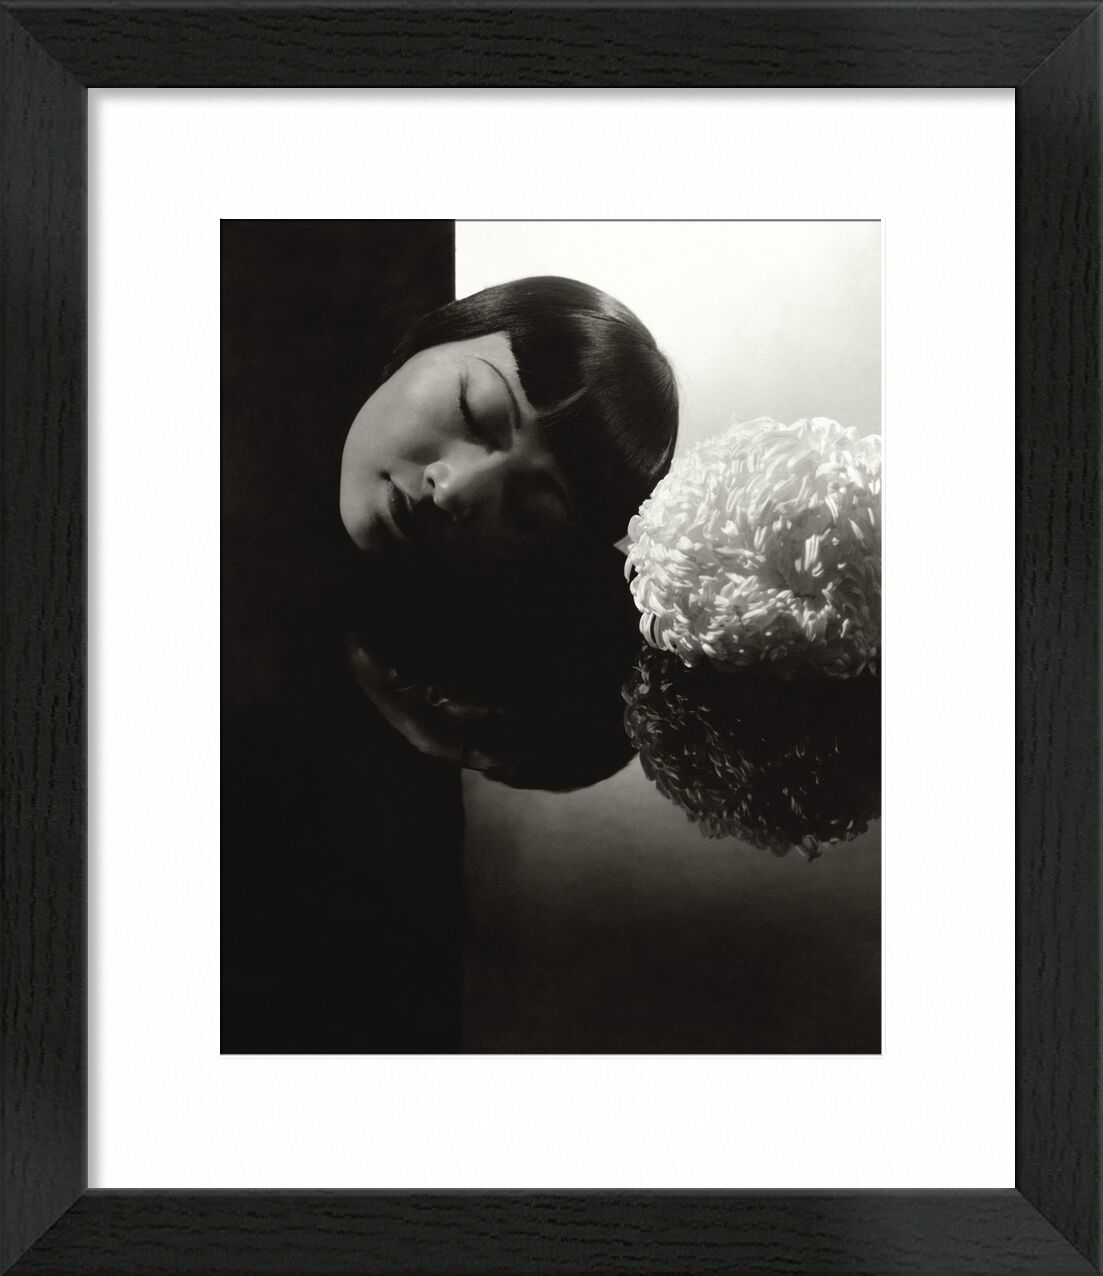 Hollywood confession  Anna May Wong - Edward Steichen 1931 desde Bellas artes, Prodi Art, mujer, ojos, blanco y negro, Edward Steichen, hollywood, confesión